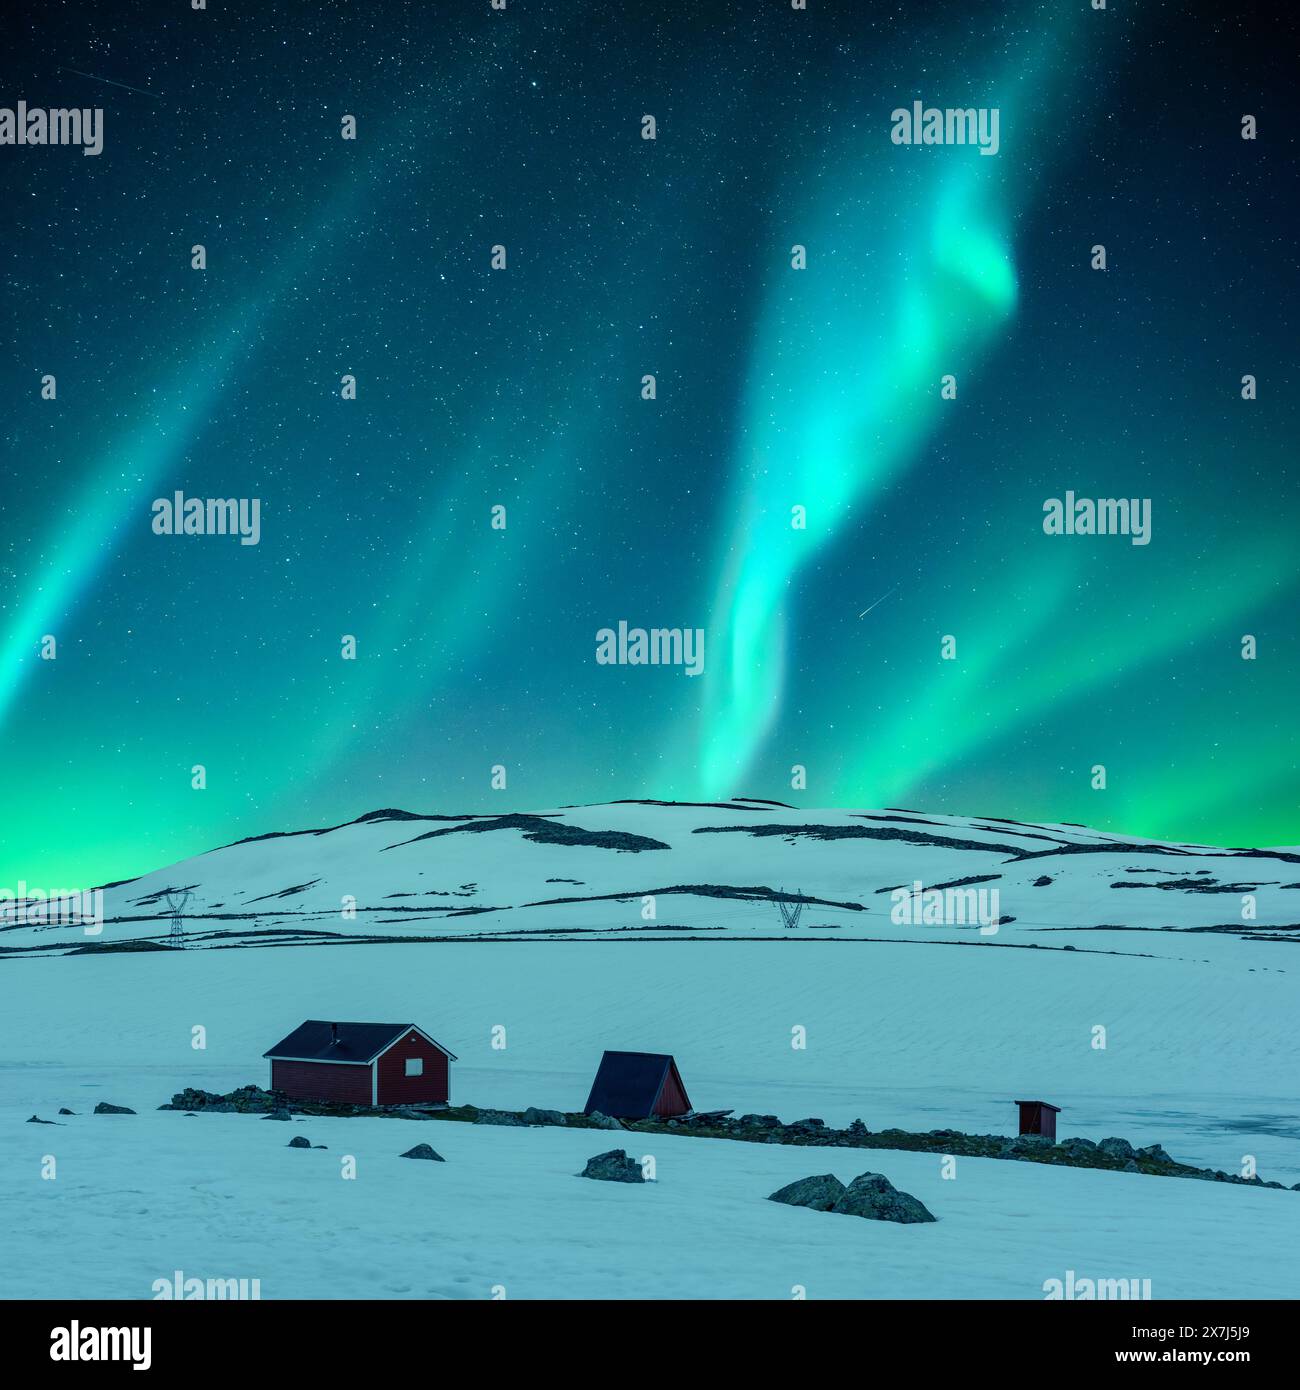 Aurora boreale aurora boreale nel cielo notturno invernale. Cabina in legno rossa sulla valle invernale. Cielo con luci polari verdi e stelle Foto Stock